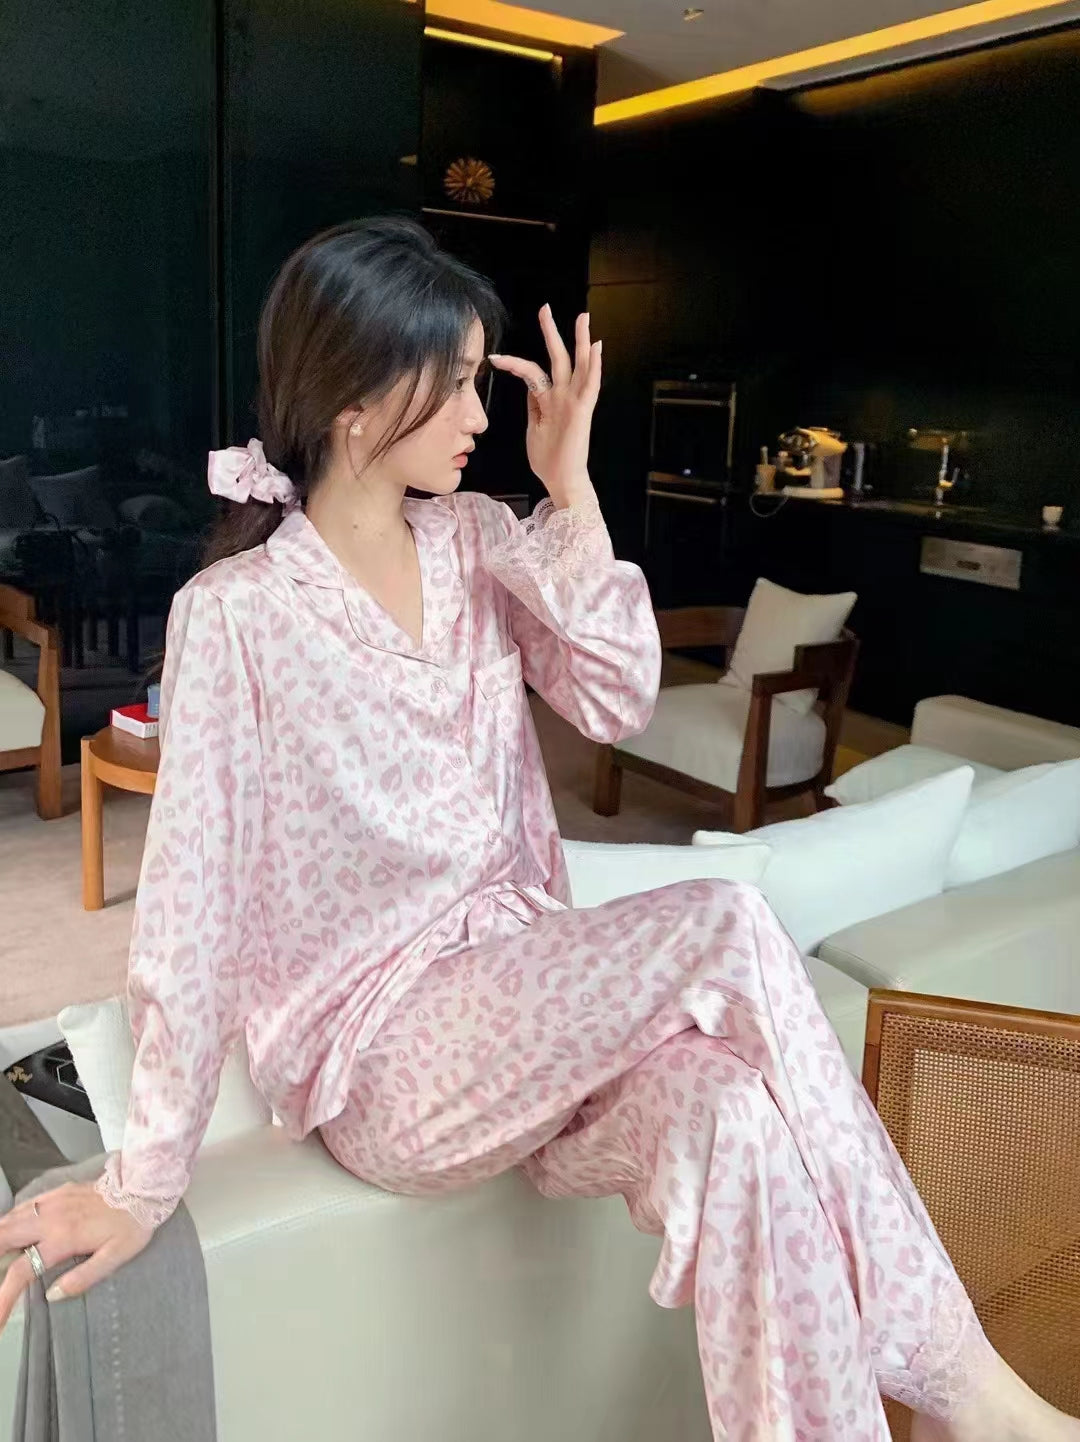 Serenedelicacy Women's Satin Pajama Set 2-Piece Sleepwear